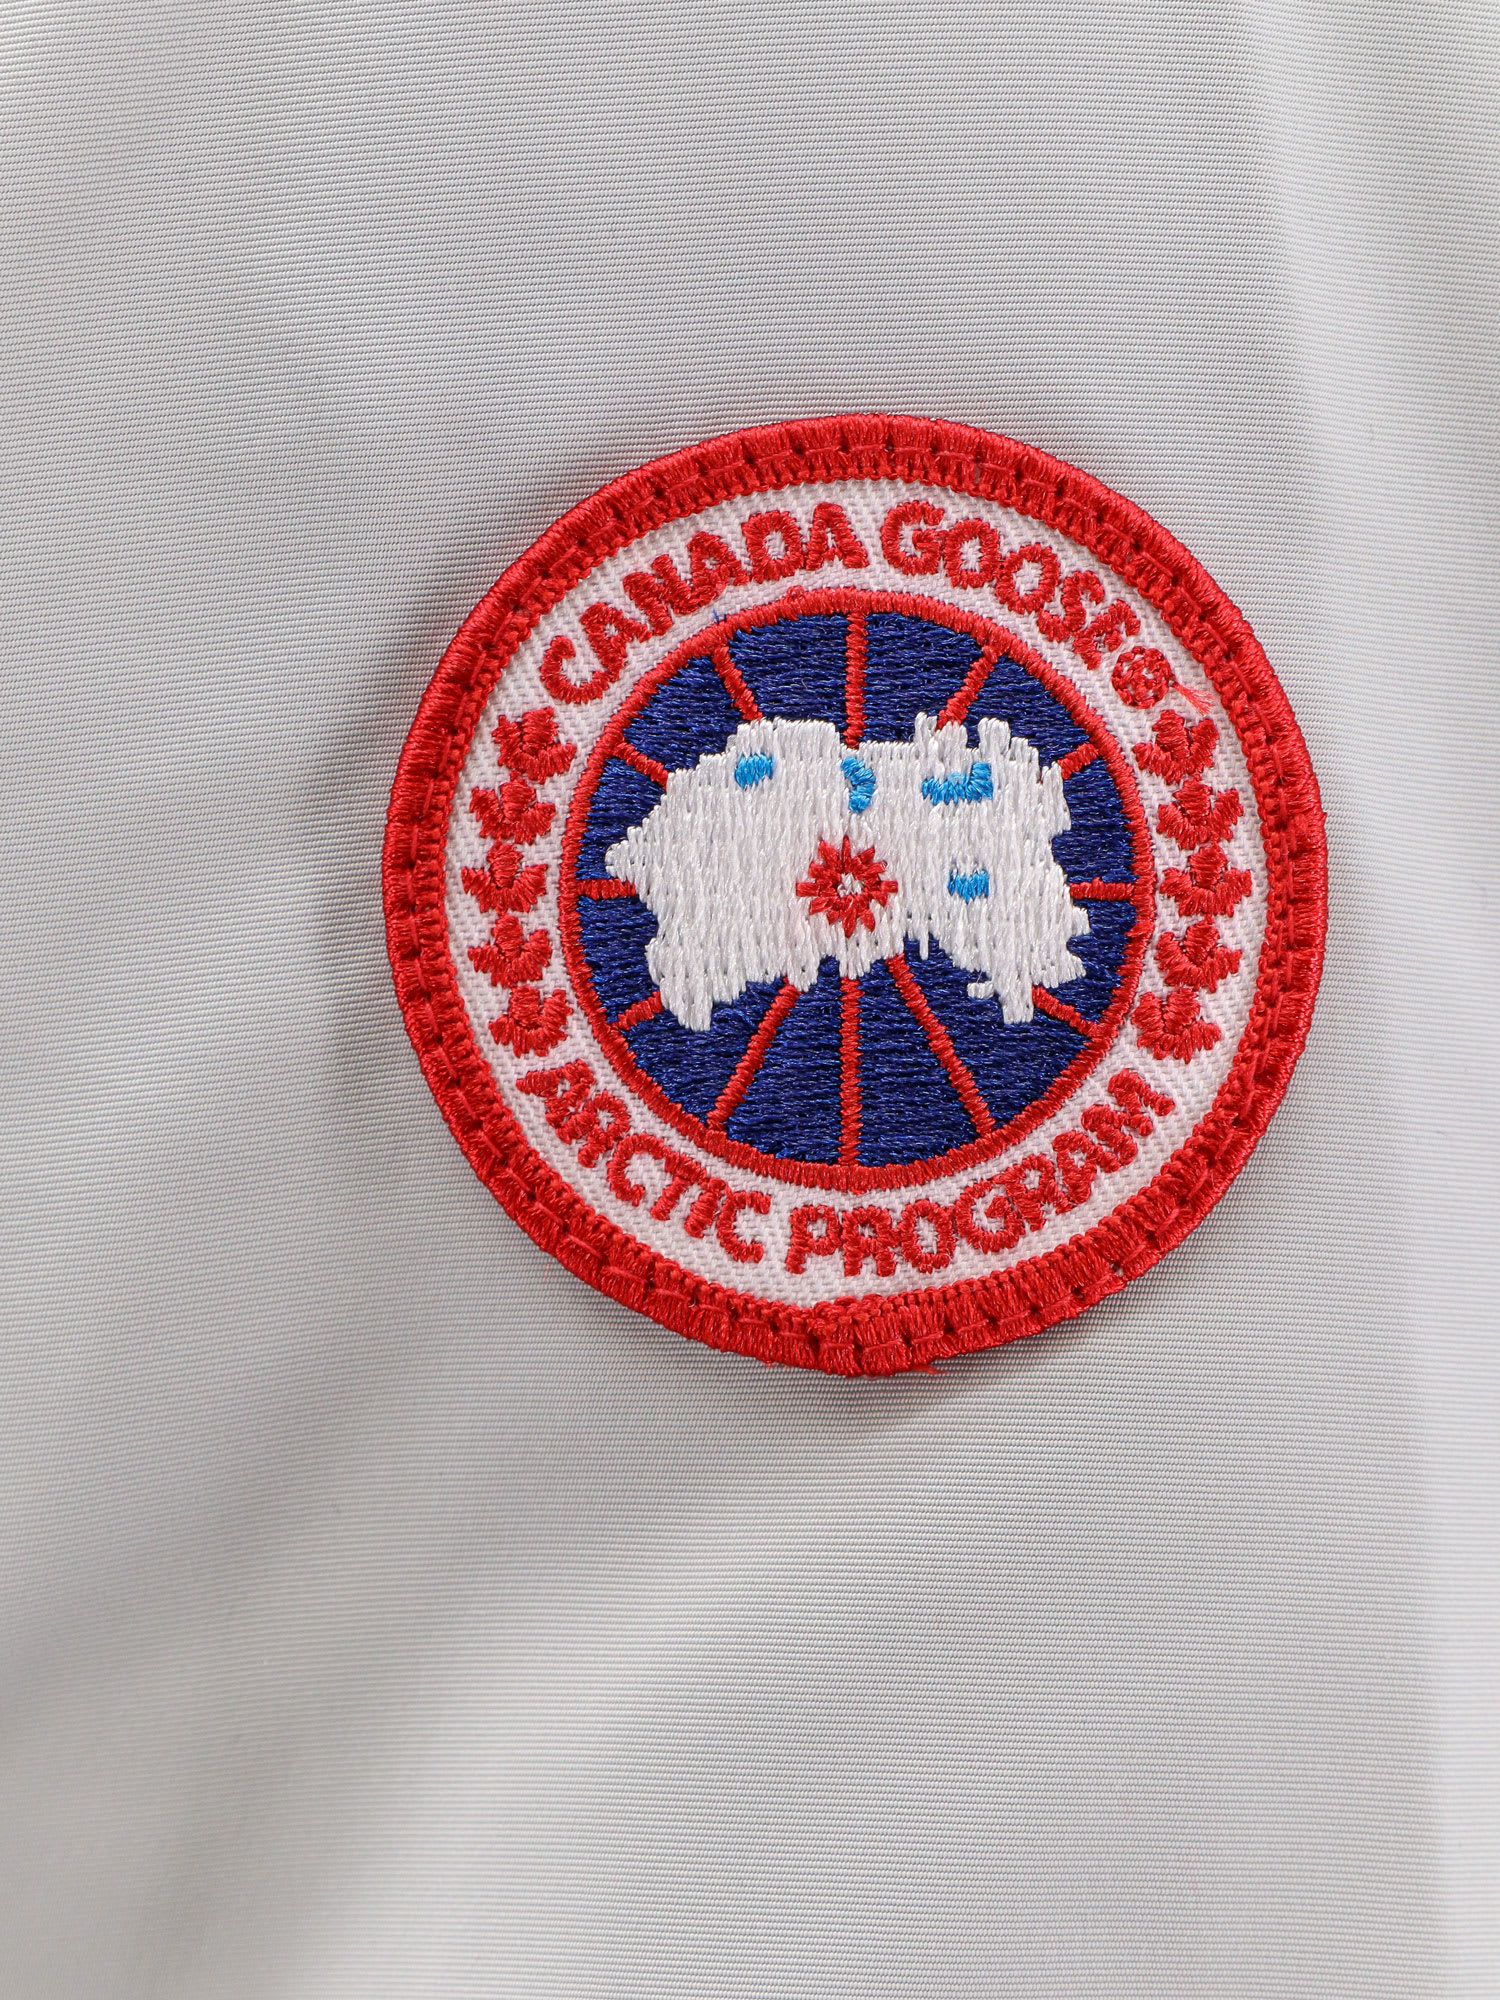 Shop Canada Goose Belcarra Jacket In Grey